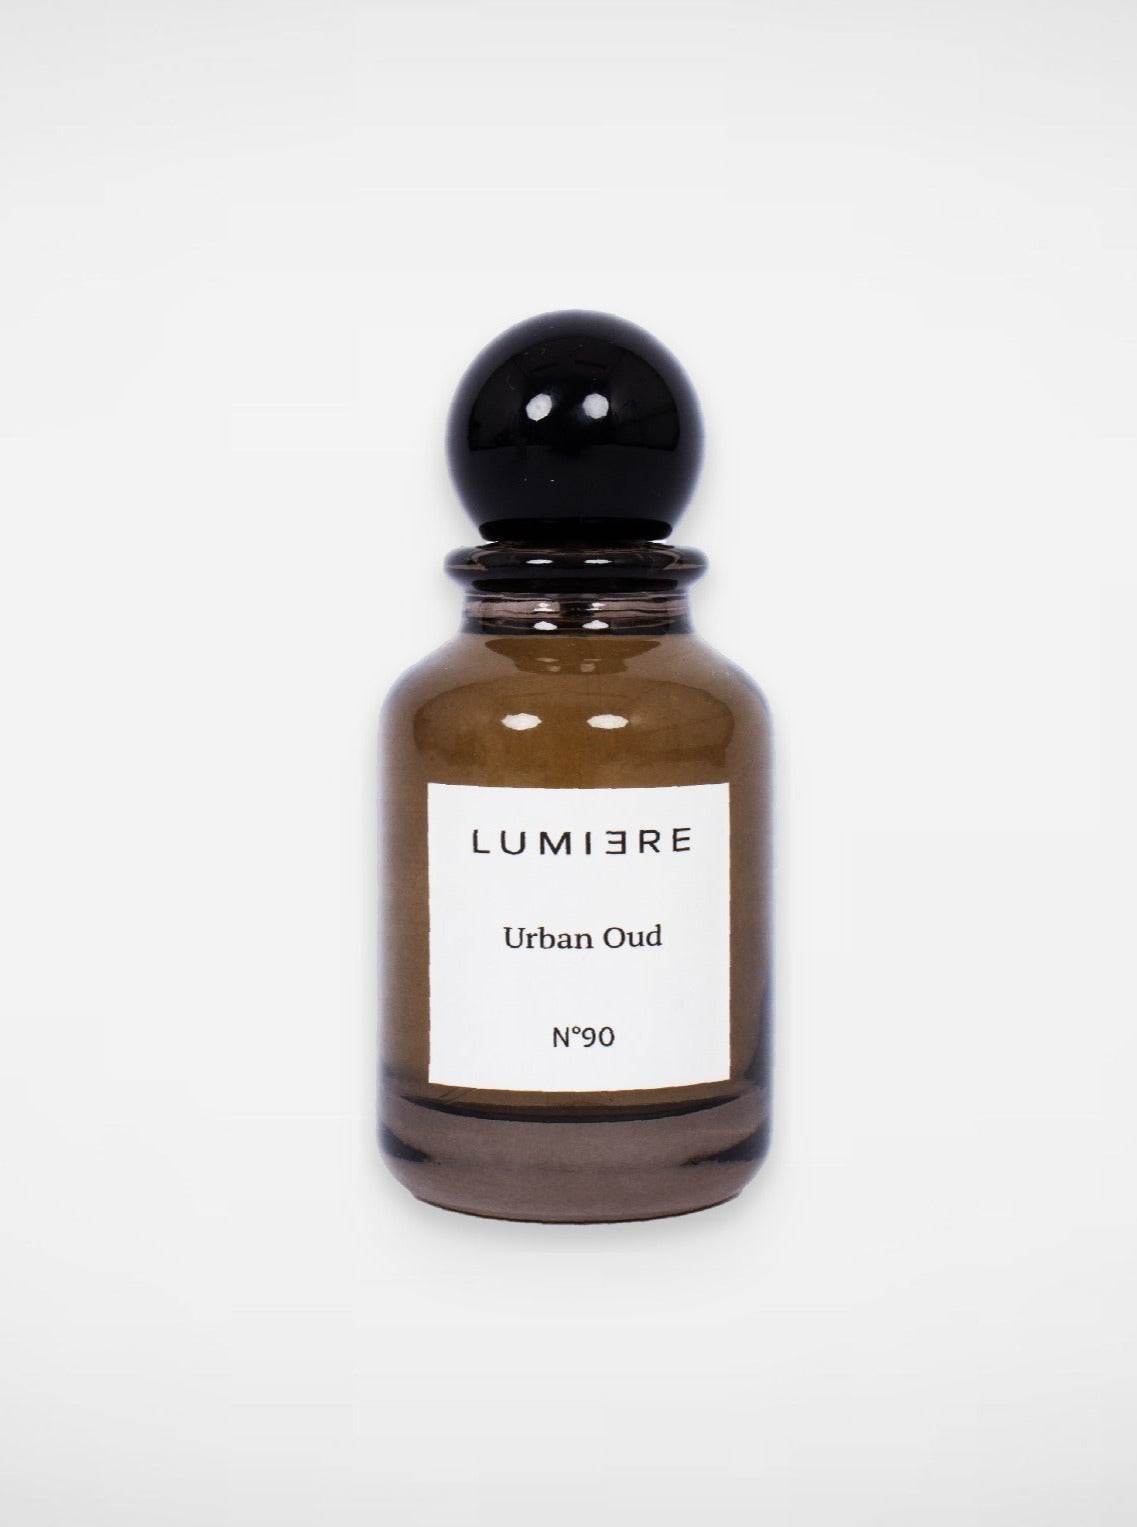 Lumi3re Urban Oud Perfume